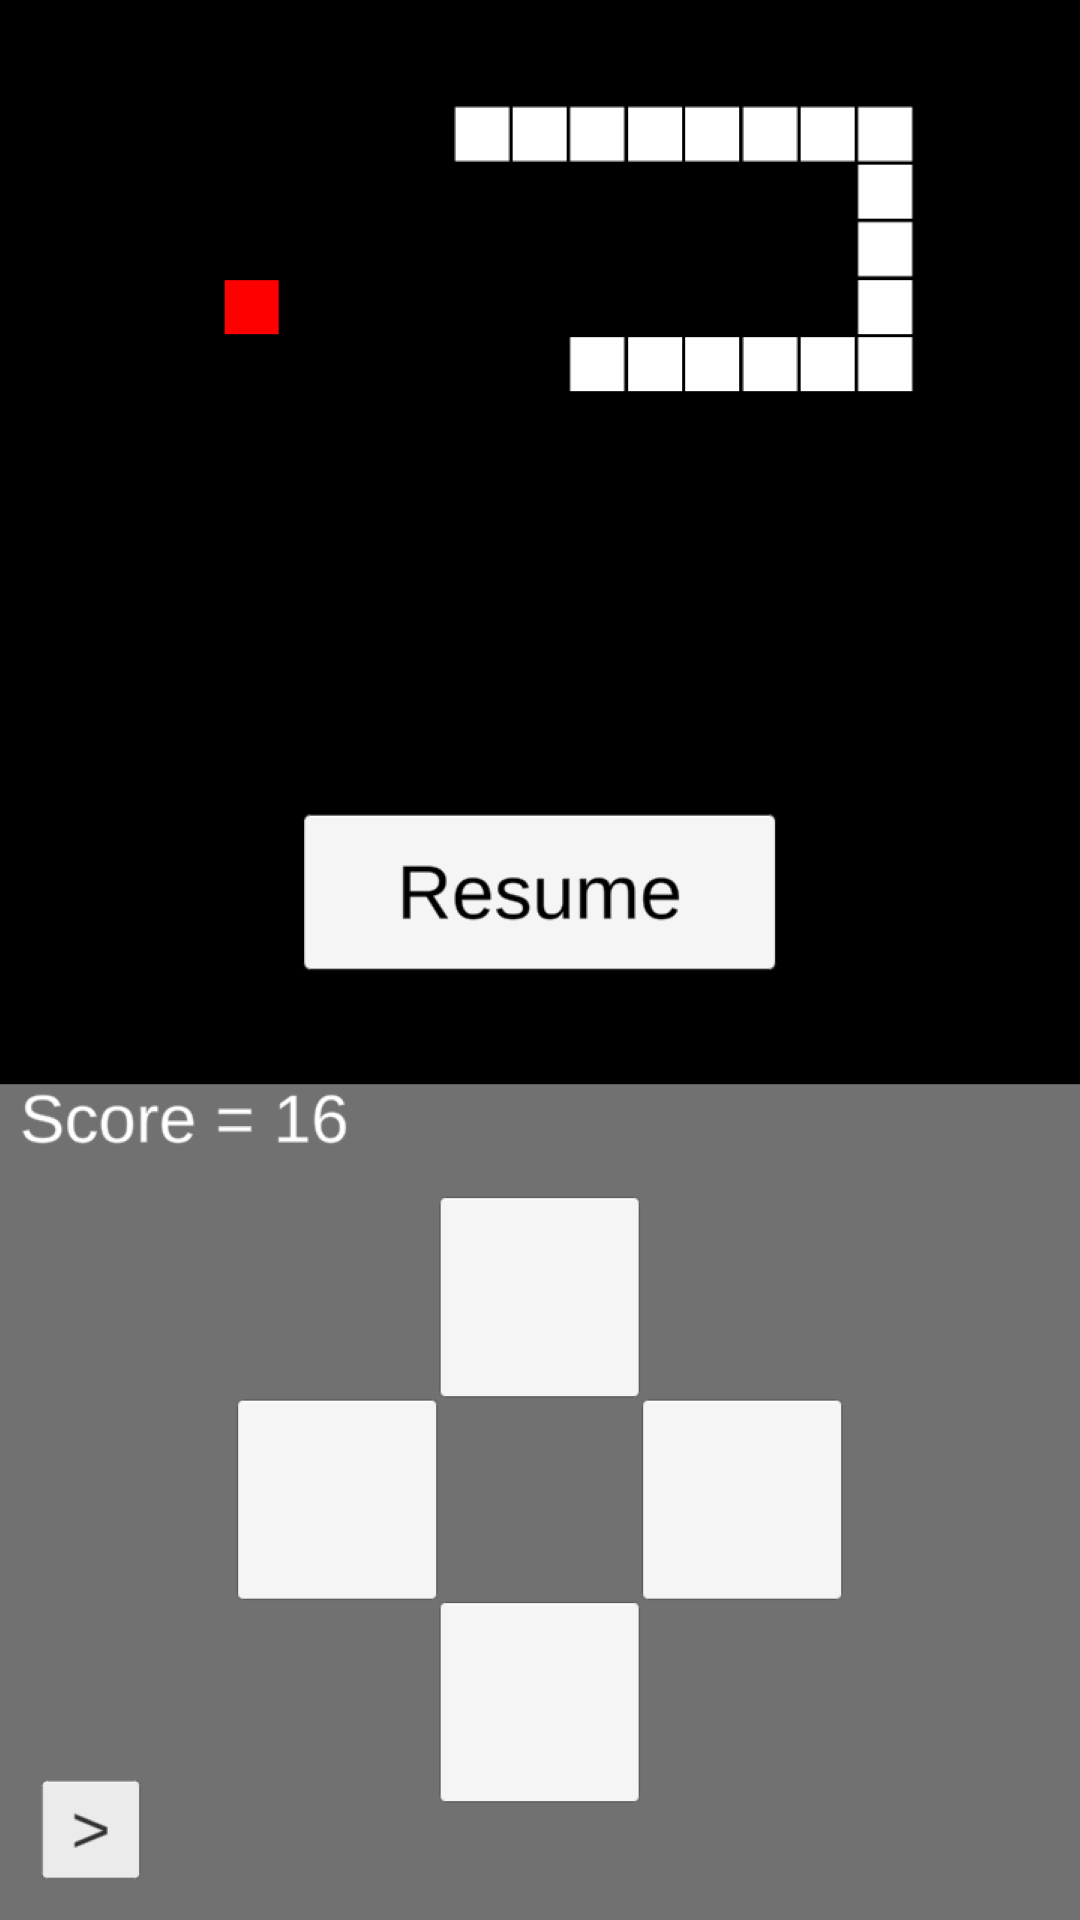 Snake Lite jogo de cobrinha versão móvel andróide iOS apk baixar  gratuitamente-TapTap